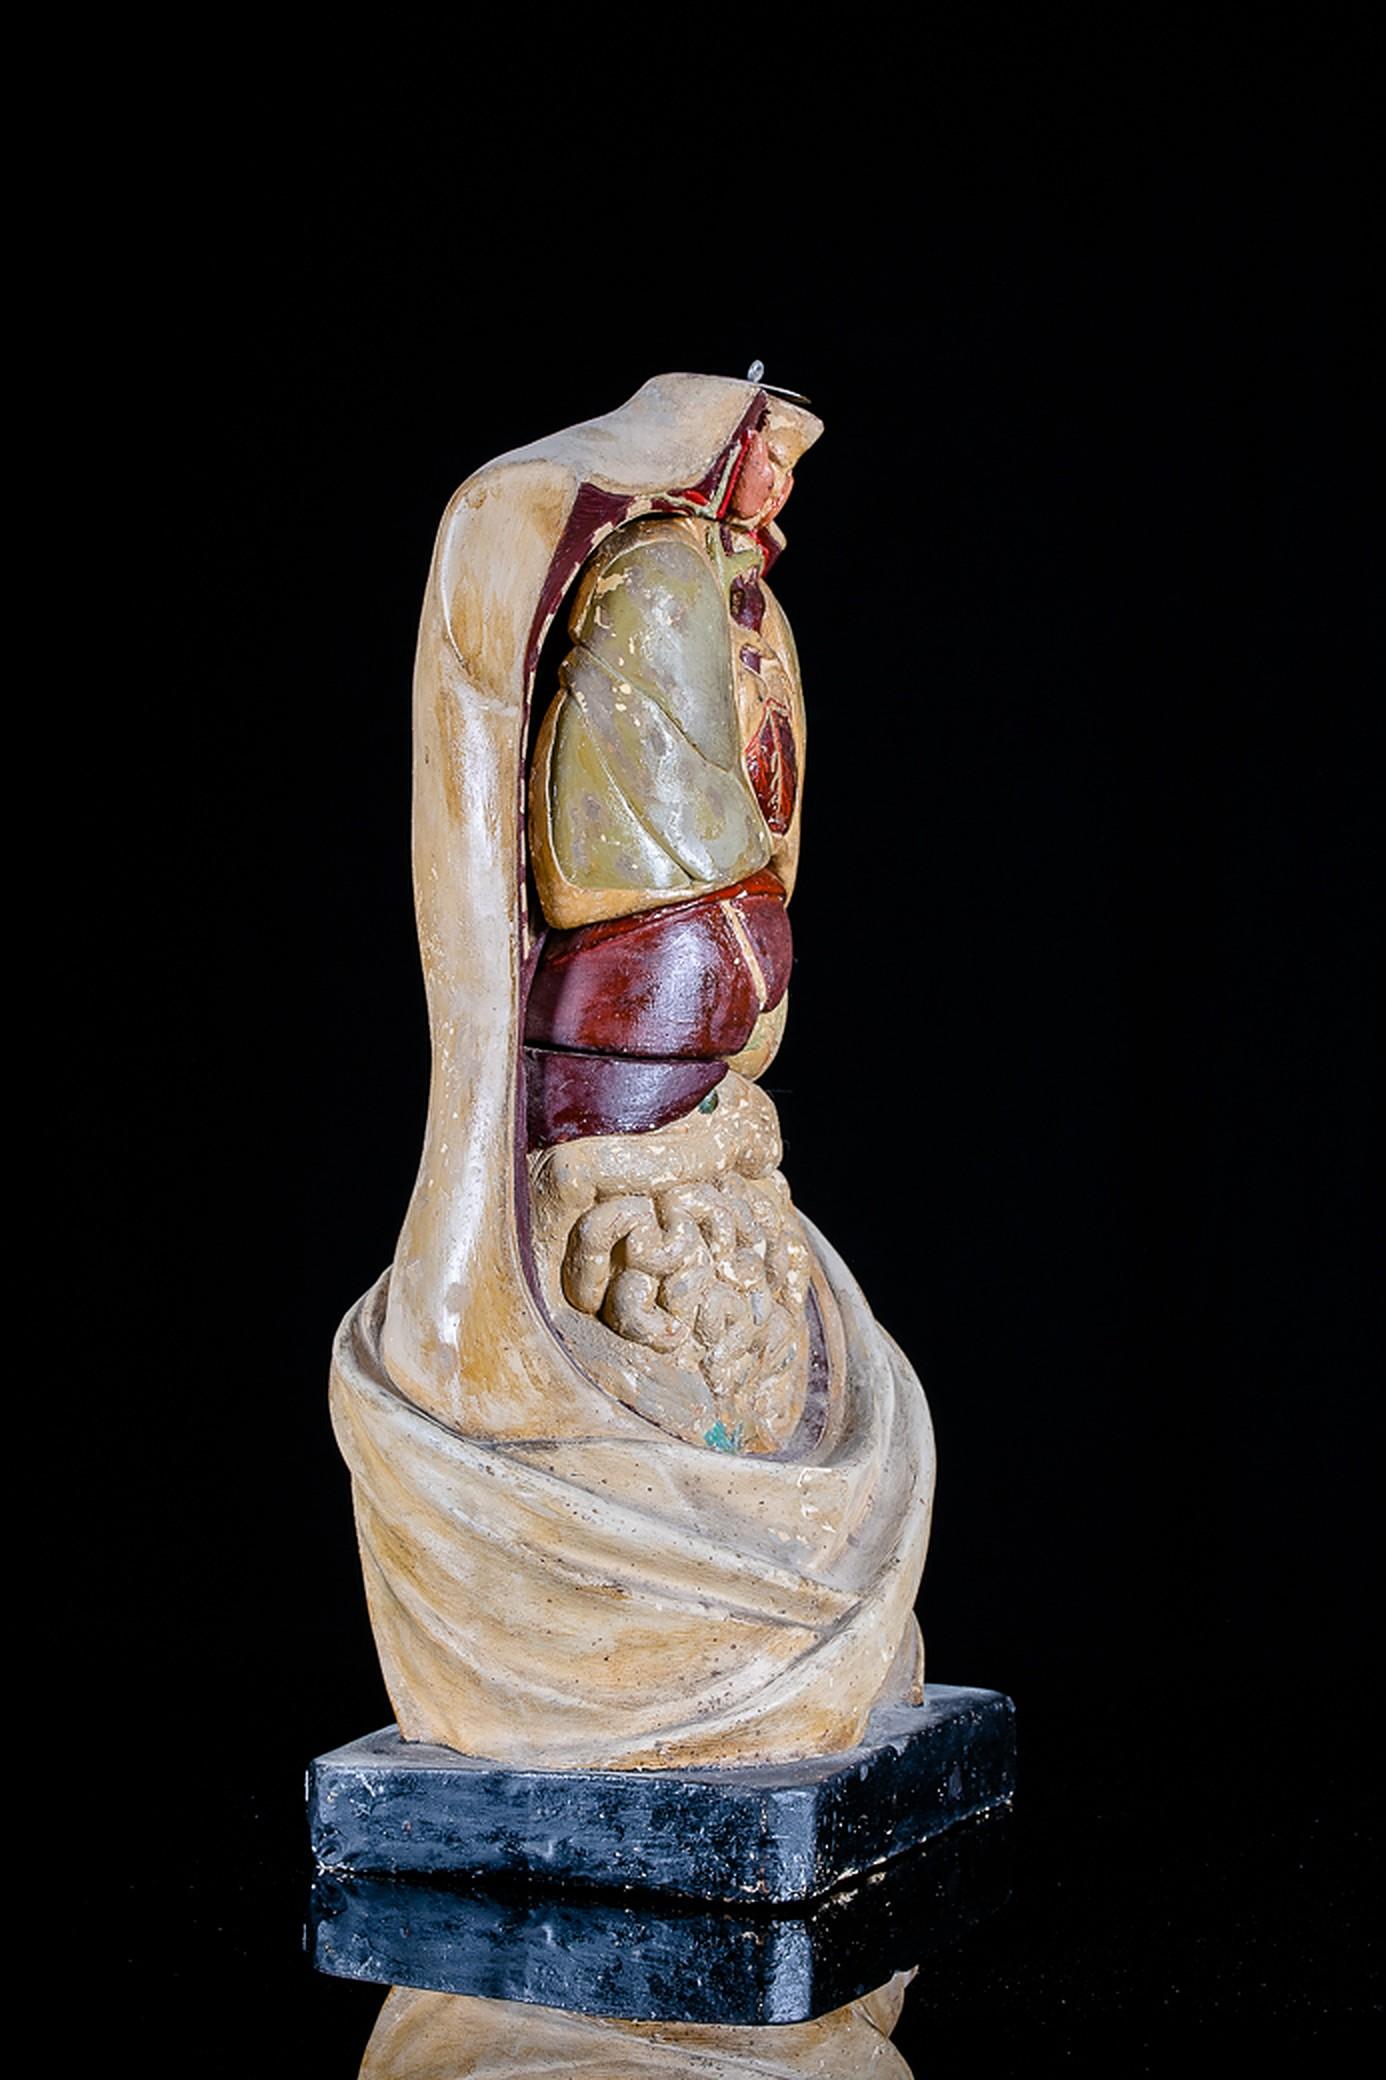 L'Allemand Franz Josef Steger (1845-1938), sous la direction du professeur Wilhelm His (1831-1904) et sur la base des dessins de l'anatomiste Carl Ernst Bock (1809-1874), a révolutionné les modèles anatomiques dans les années 1880 en mettant au